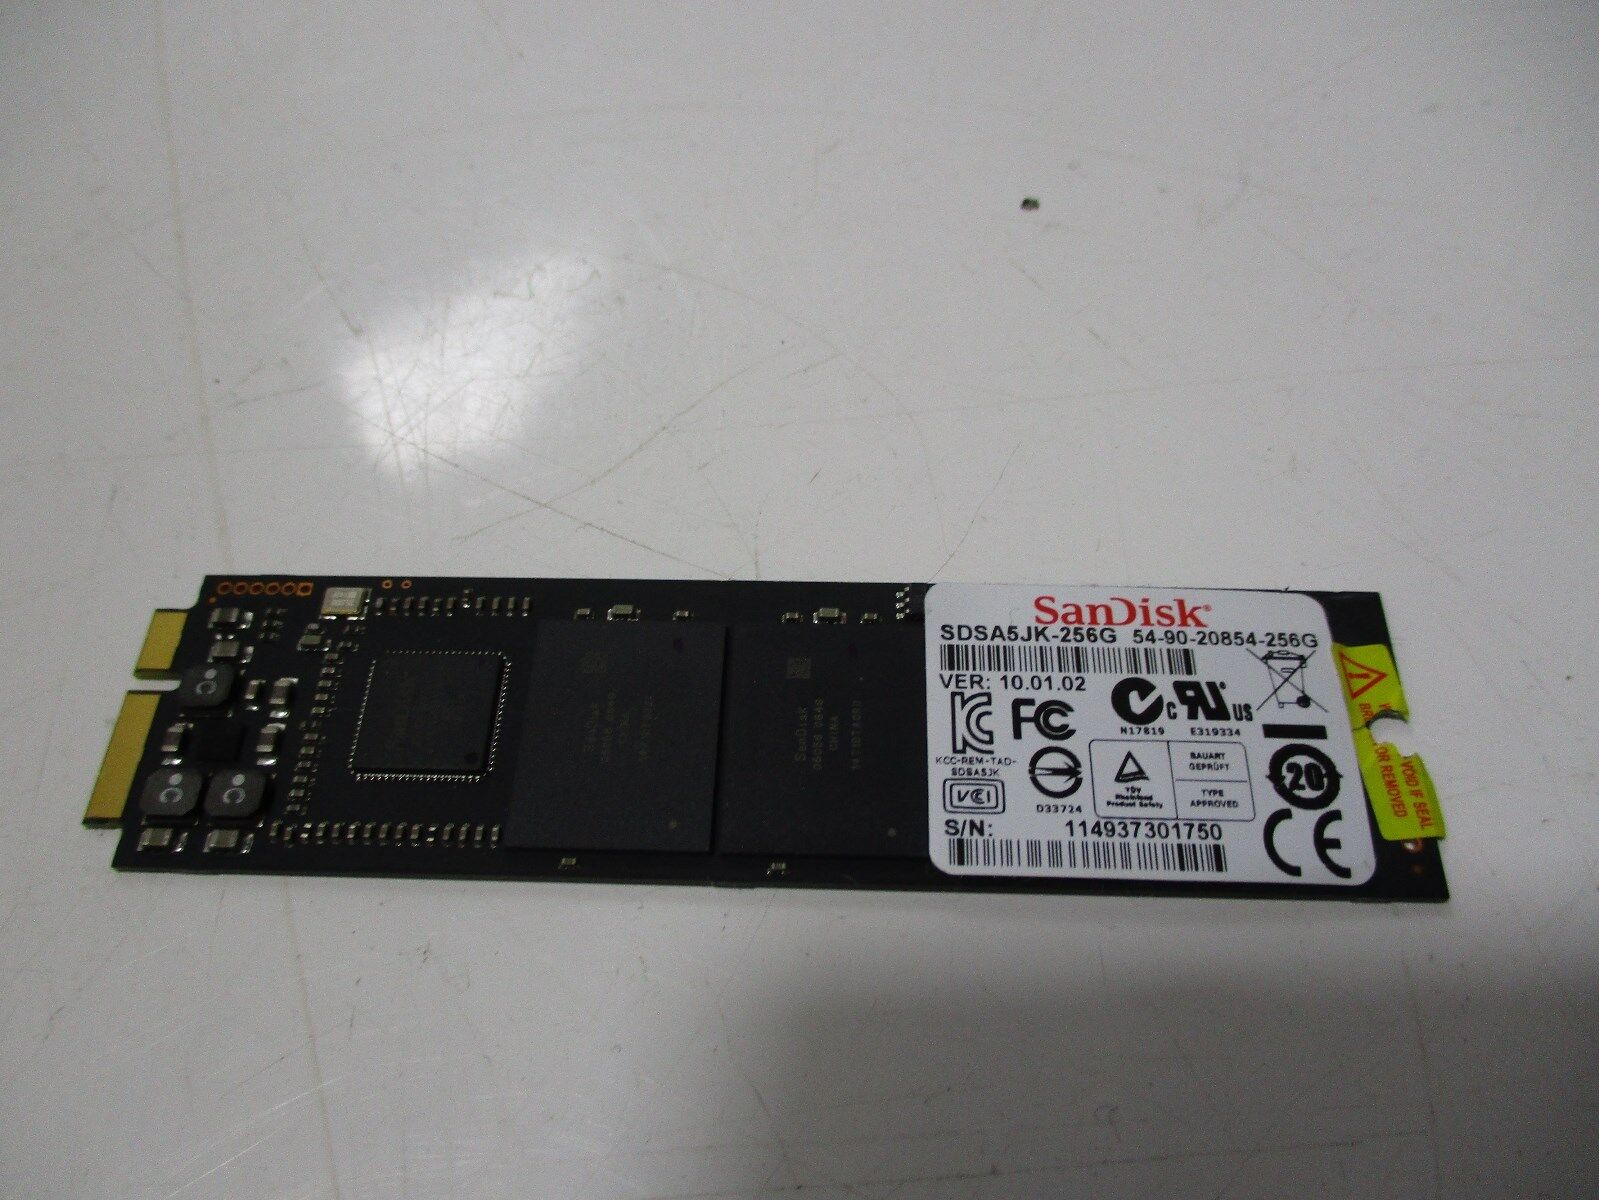 SANDISK SDSA5JK-256G 256GB SSD MSATA NGFF HDD FOR ASUS UX21 UX31 LAPTOP 